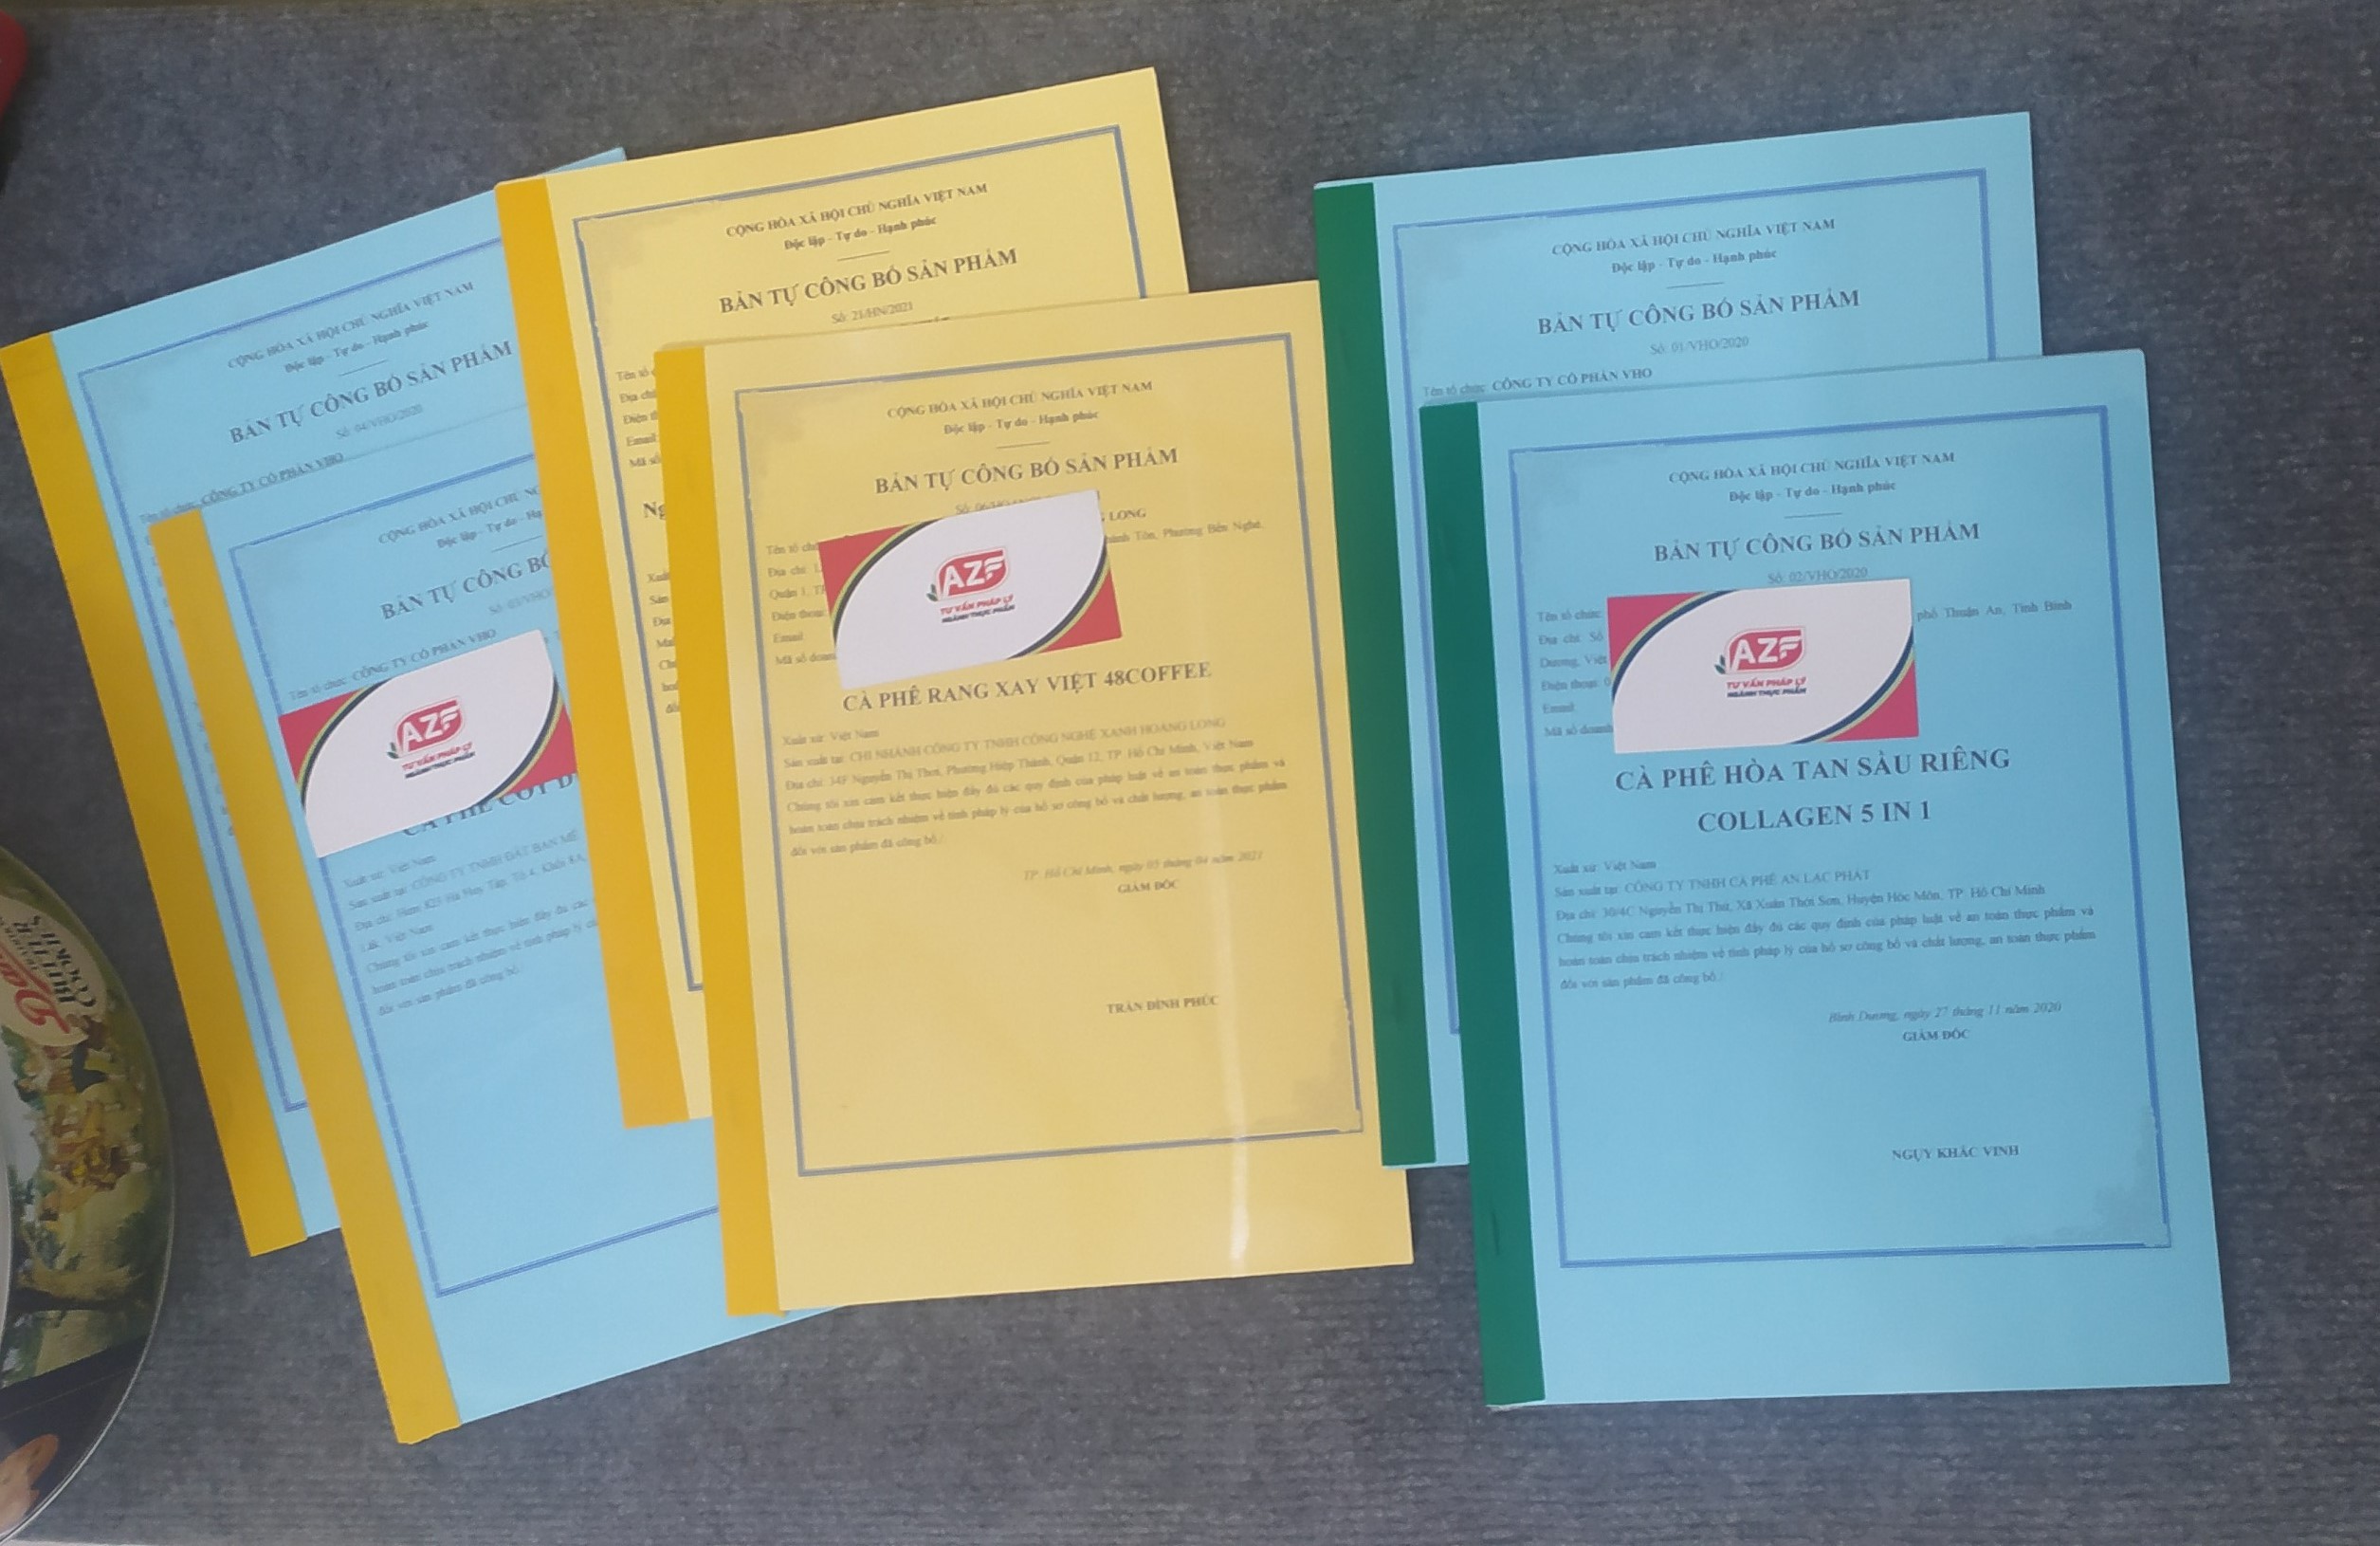 Các bộ hồ sơ Tự công bố sản phẩm AZF đã thực hiện cho khách hàng